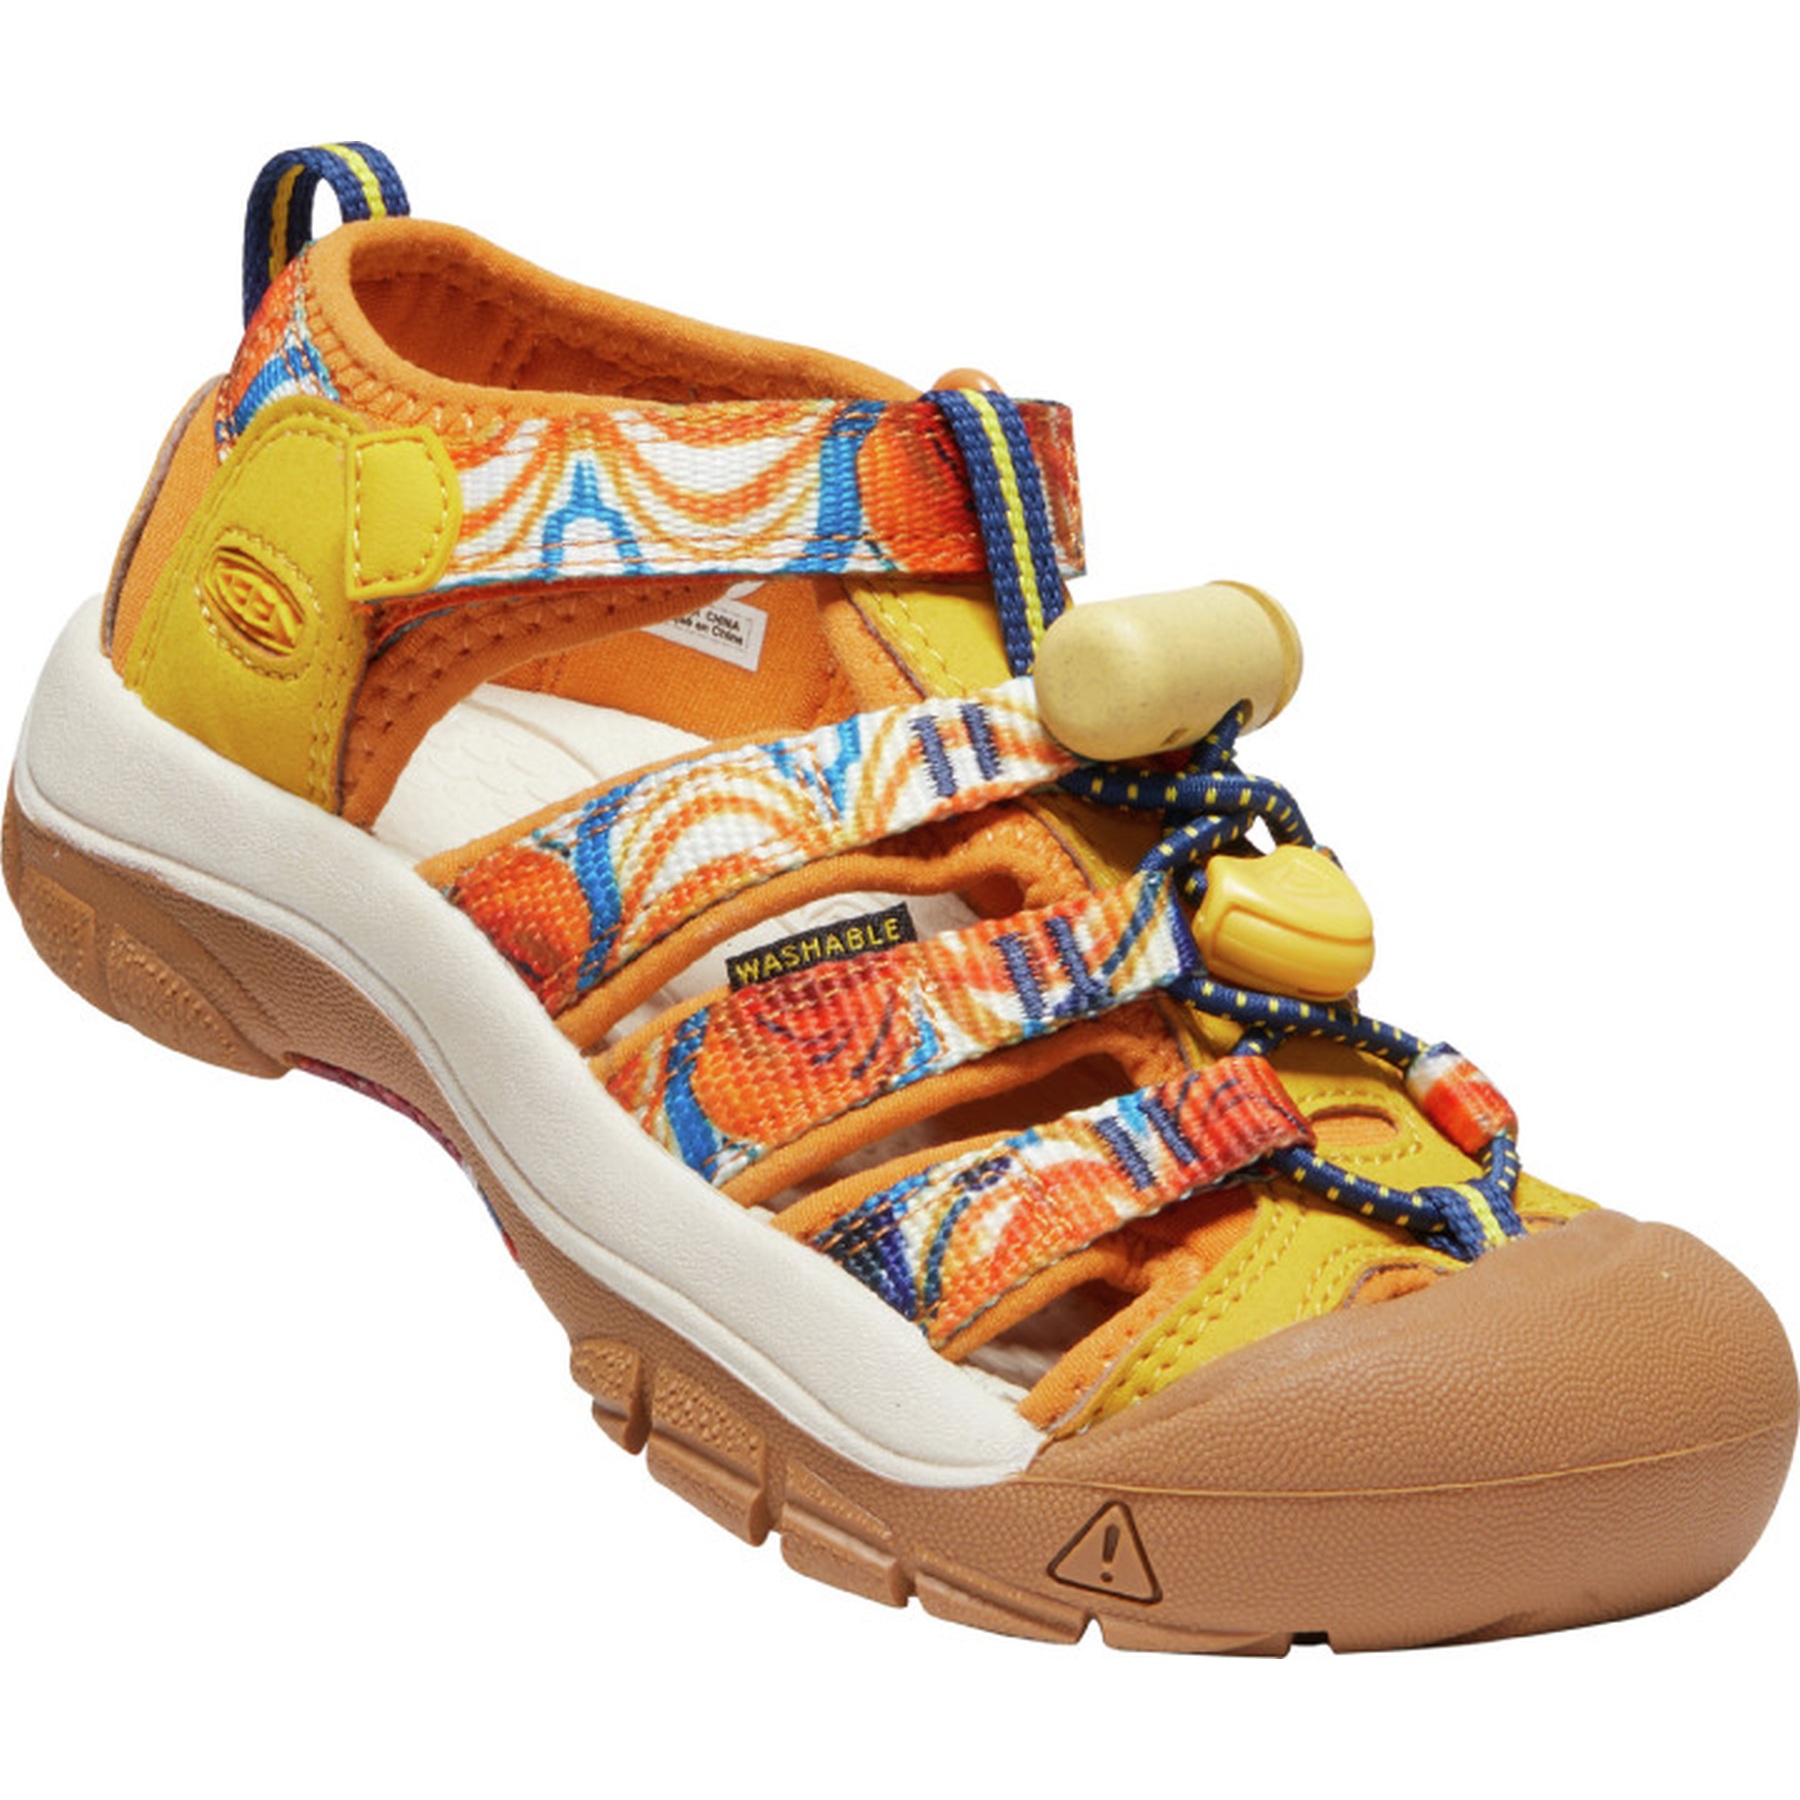 Image of KEEN Newport H2 Kids Sandals - Orange Peel / Yellow (Size 24-31)